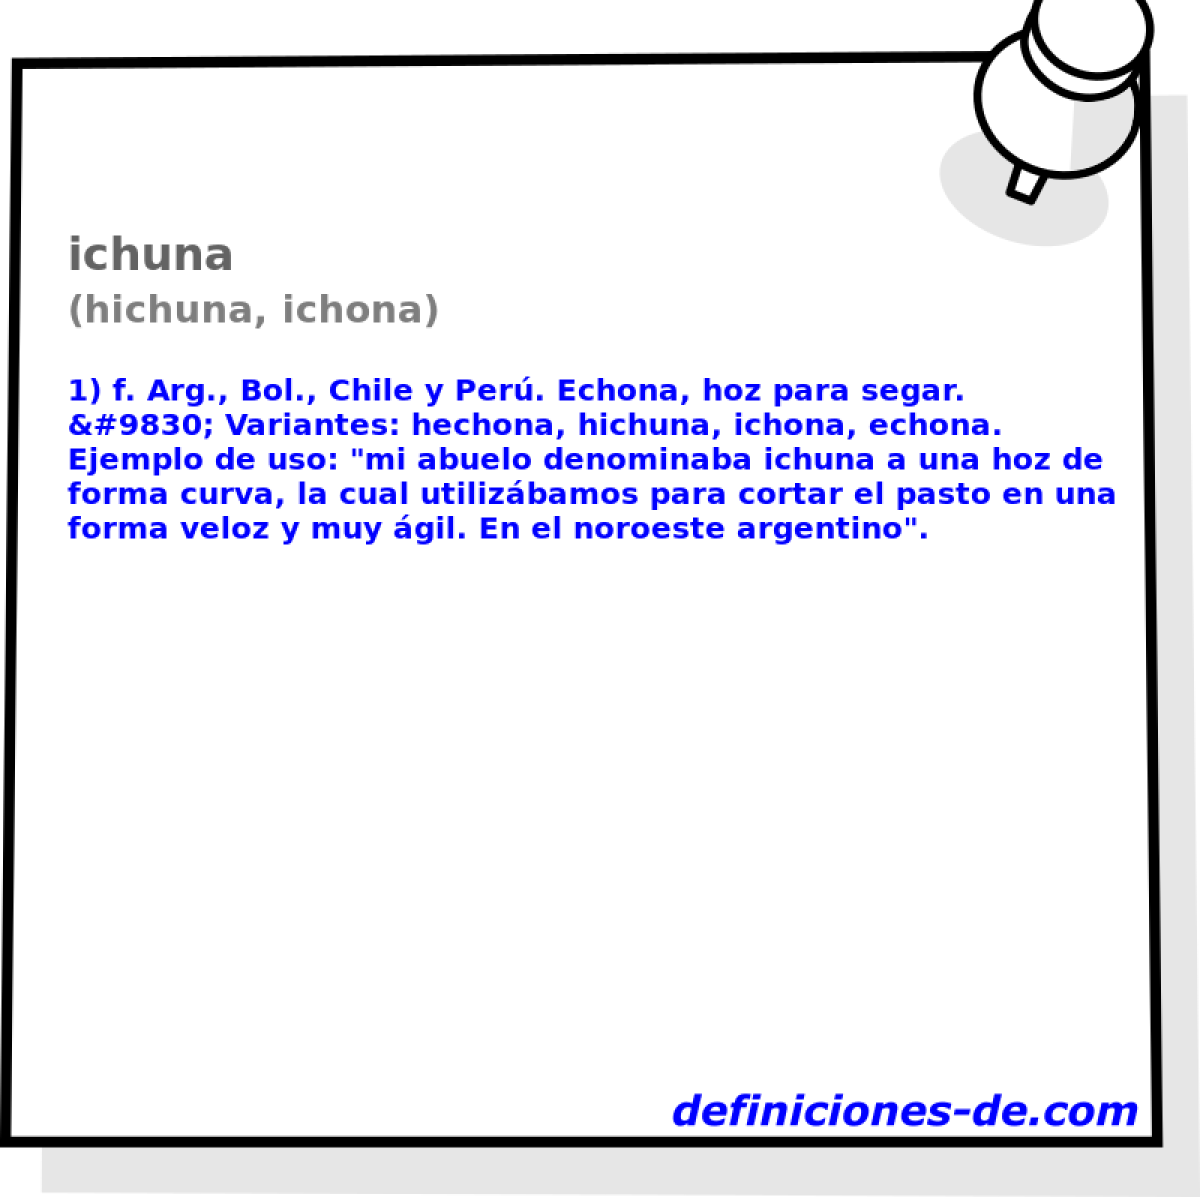 ichuna (hichuna, ichona)